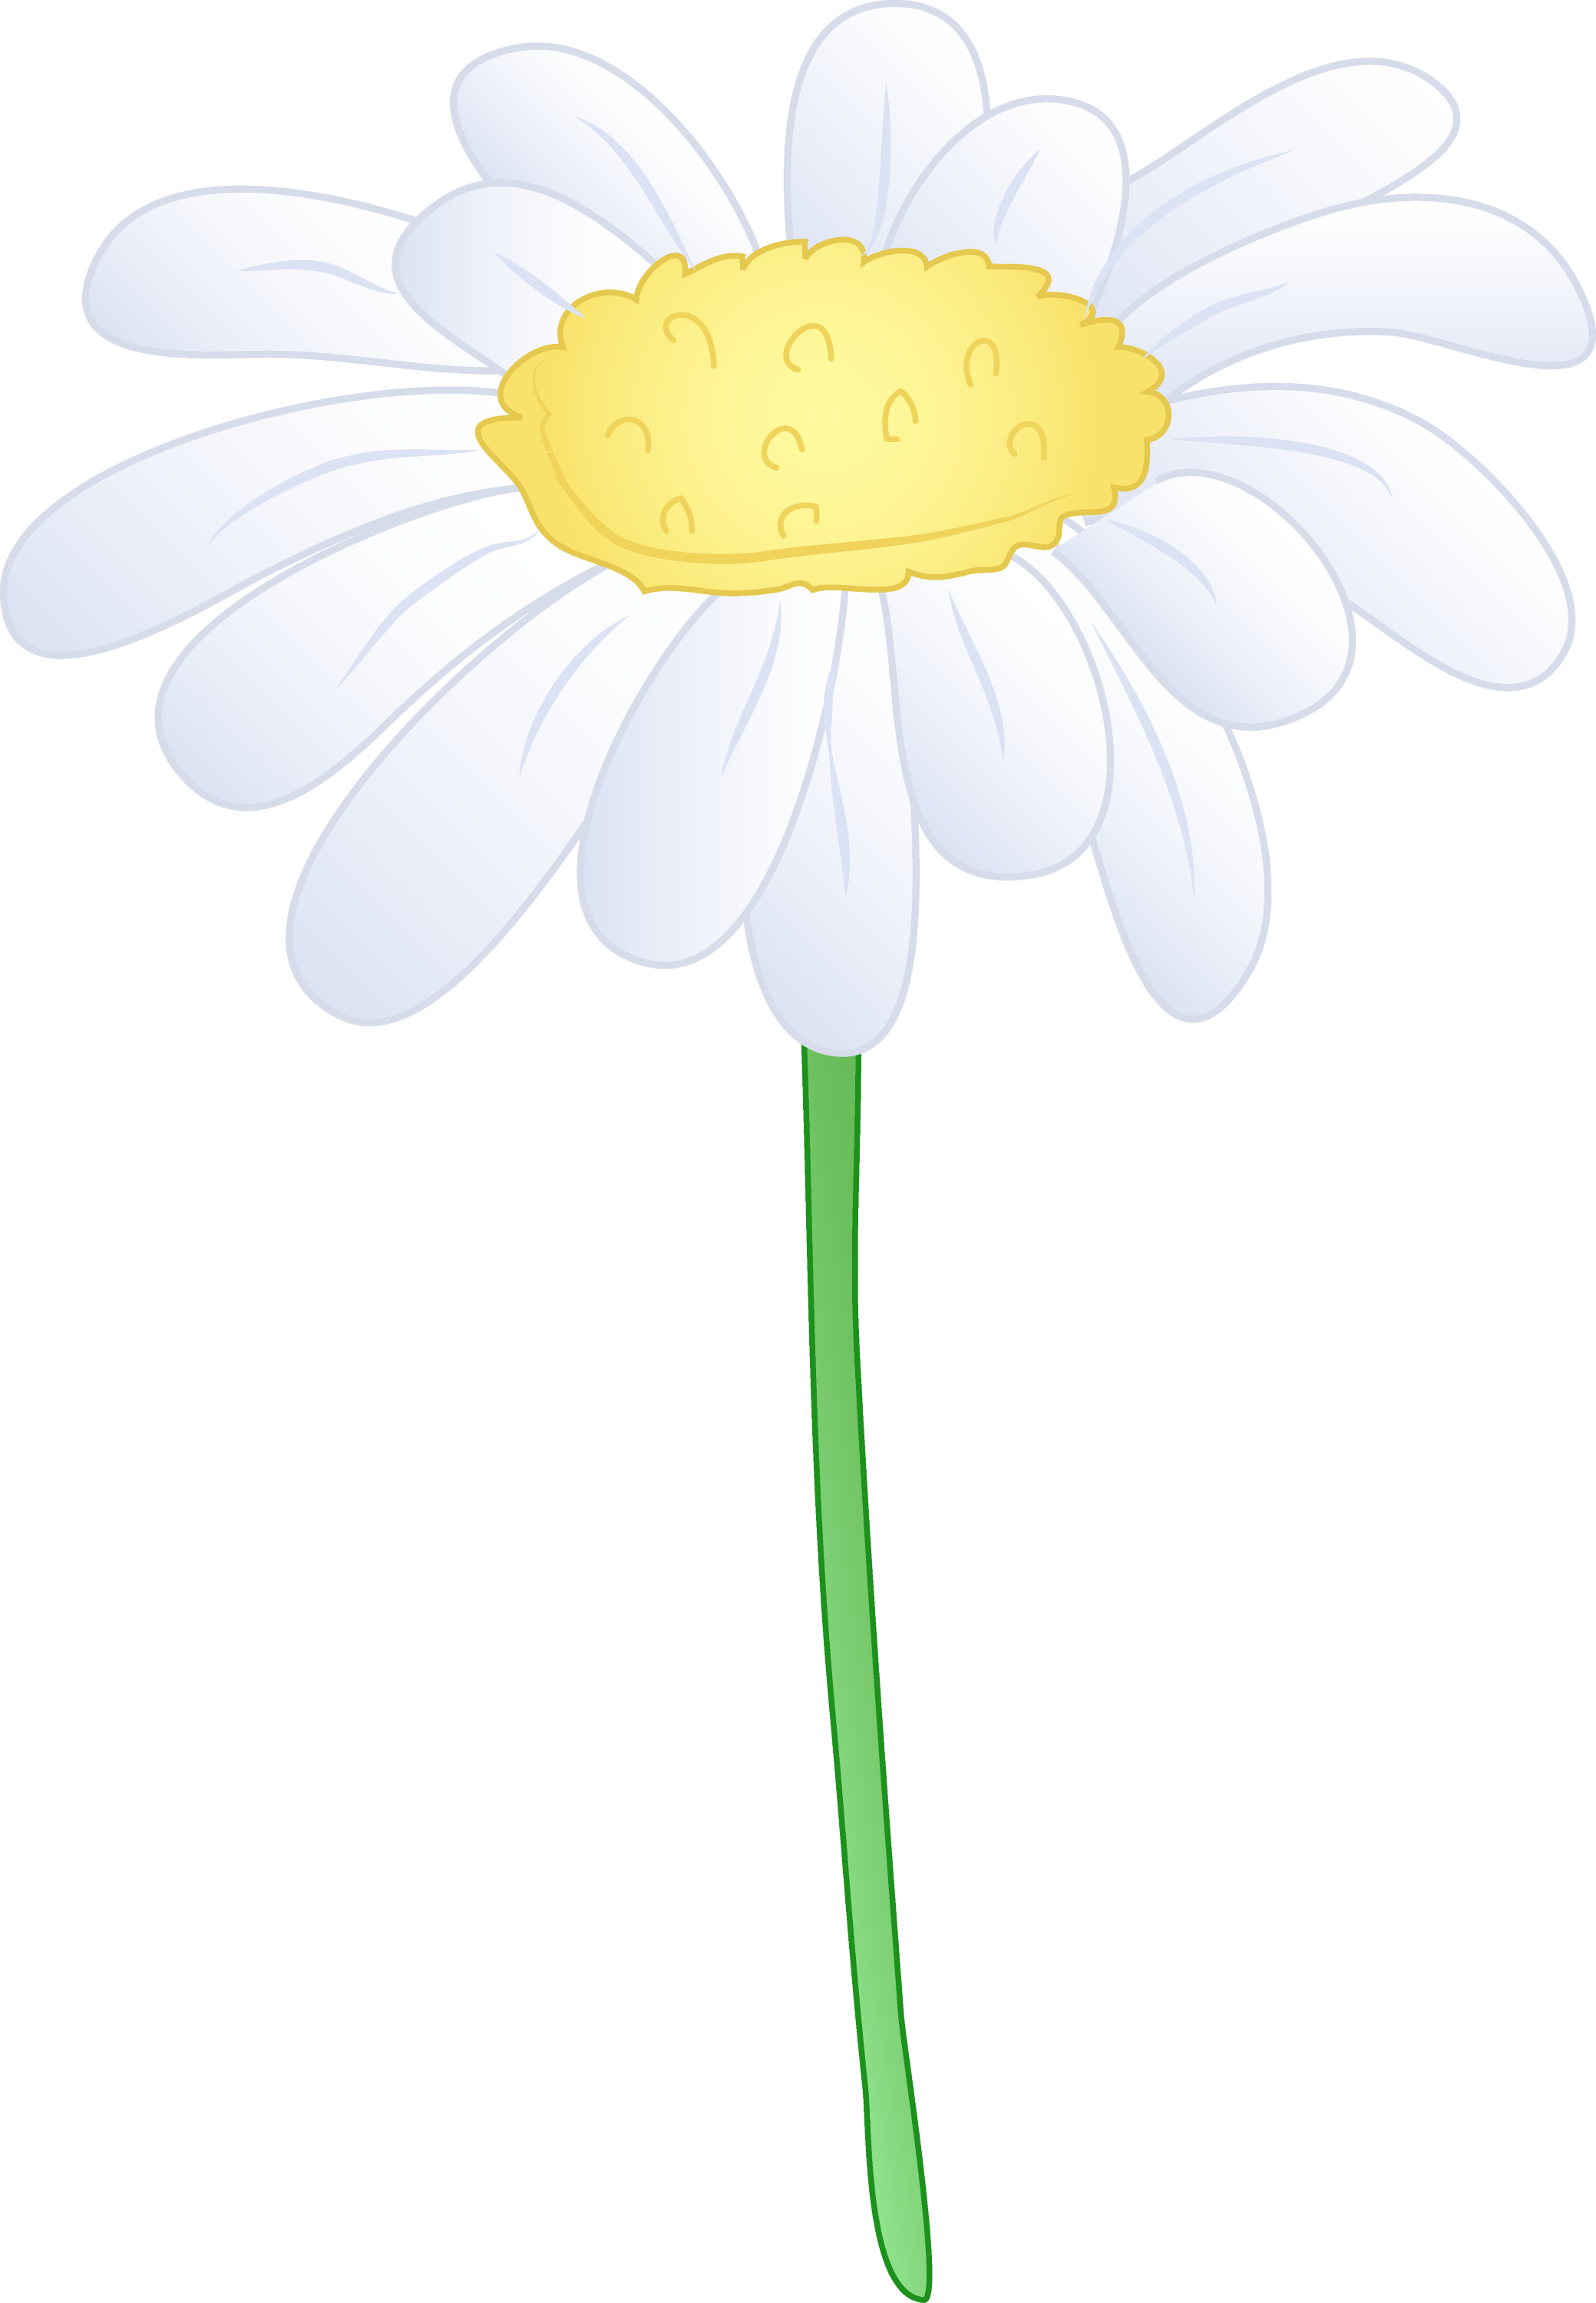 httpssingle white daisy flower 1747